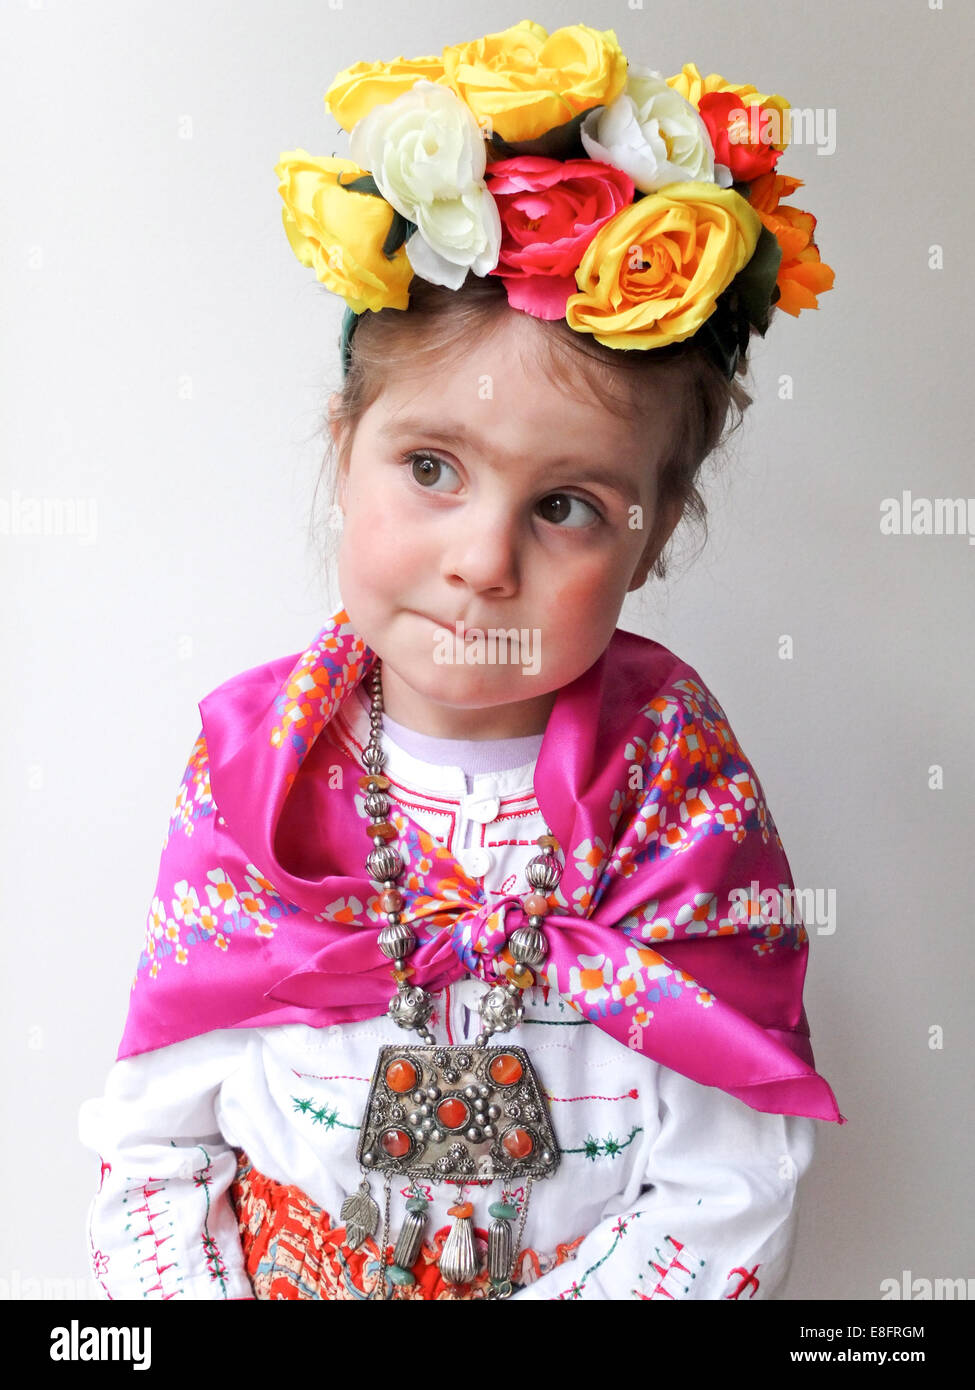 Girl dressed up as Frida Kahlo Stock Photo